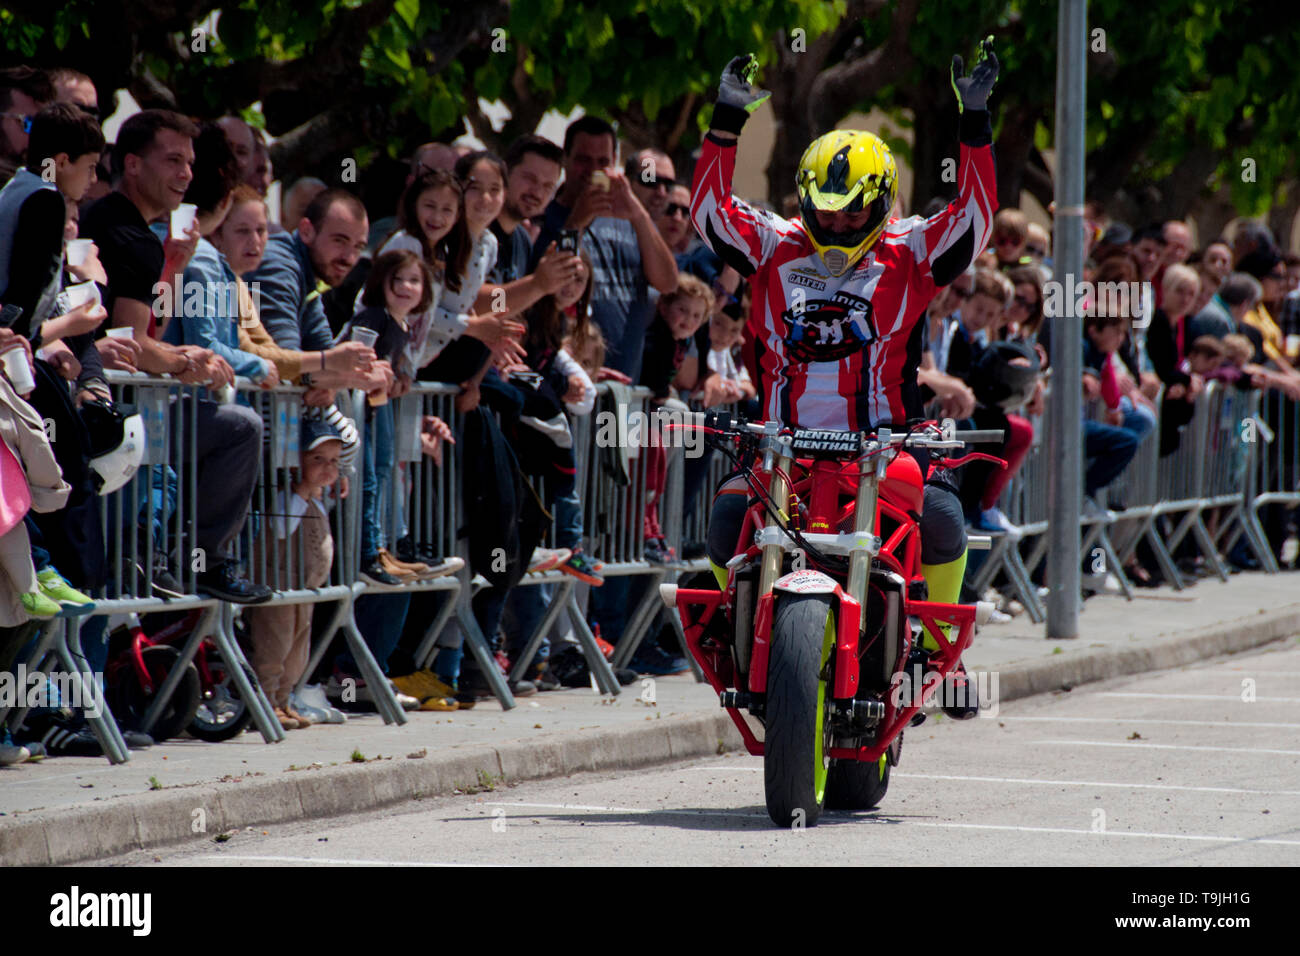 Motorrad stunt Rider in Aktion Katalonien, Spanien Stockfoto